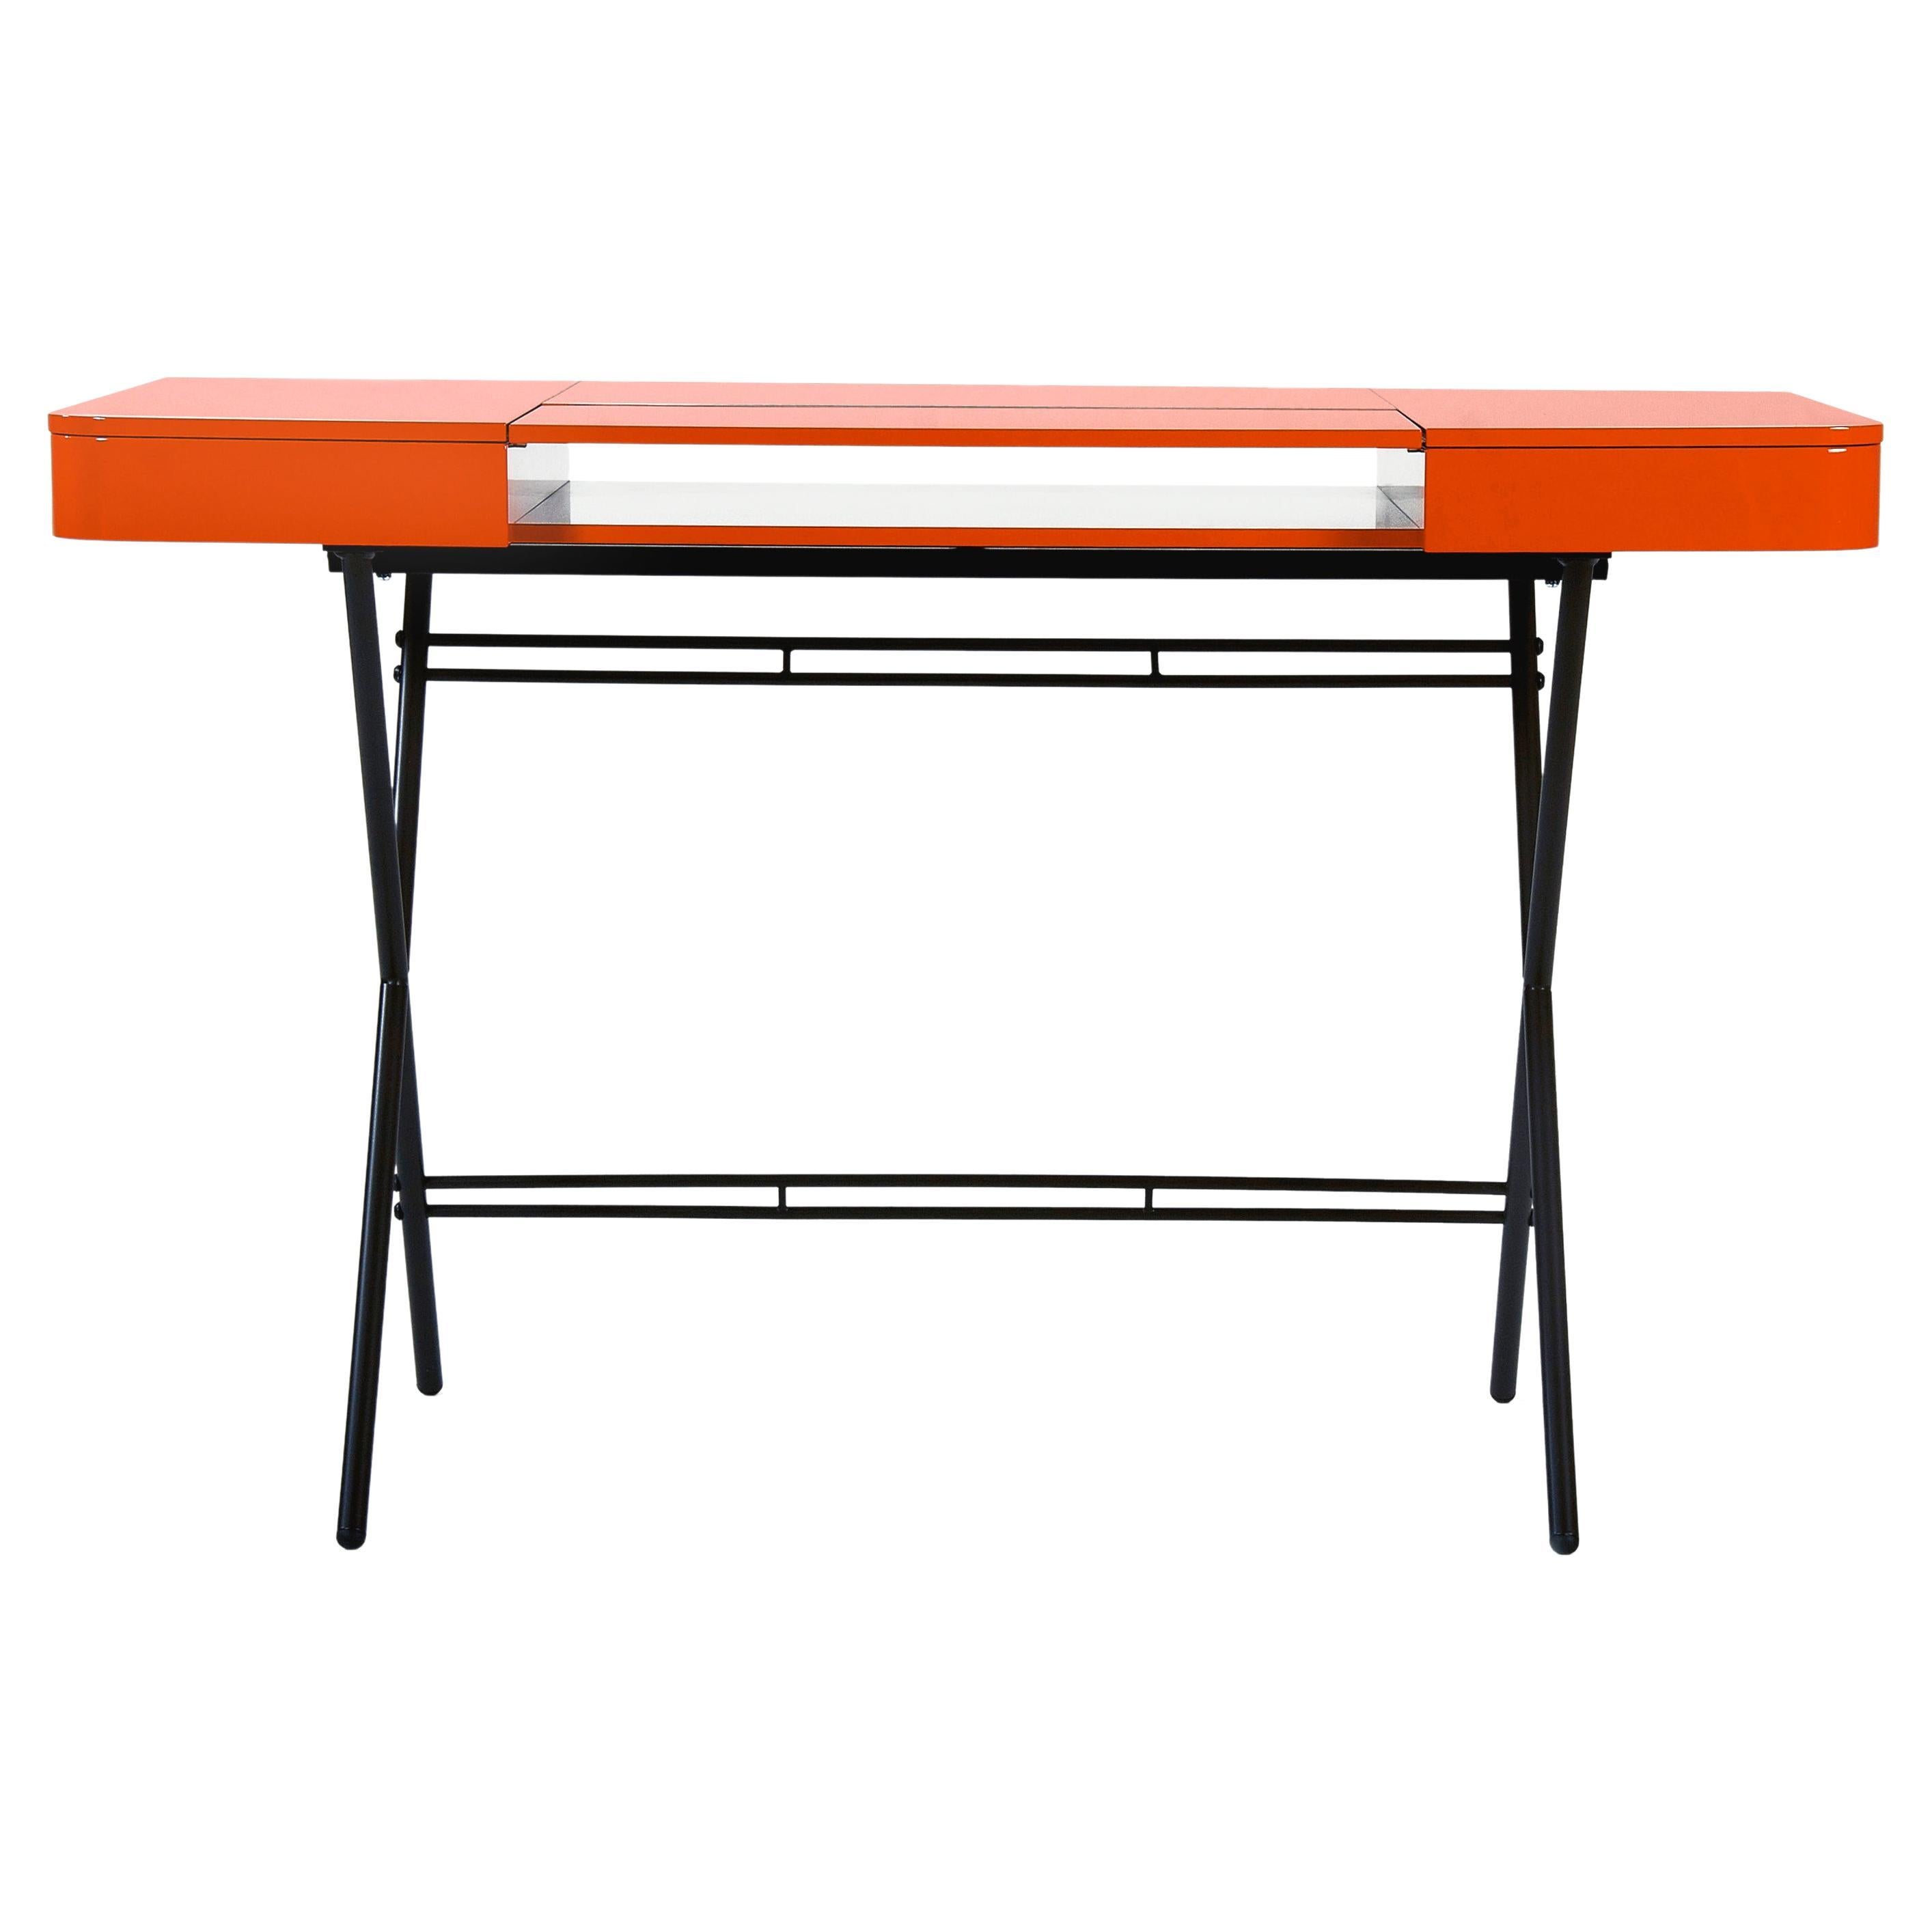 Schreibtischdesign von Adentro Cosimo, Marco Zanuso jr, orangefarbene glänzende Platte und Bronzesockel. 